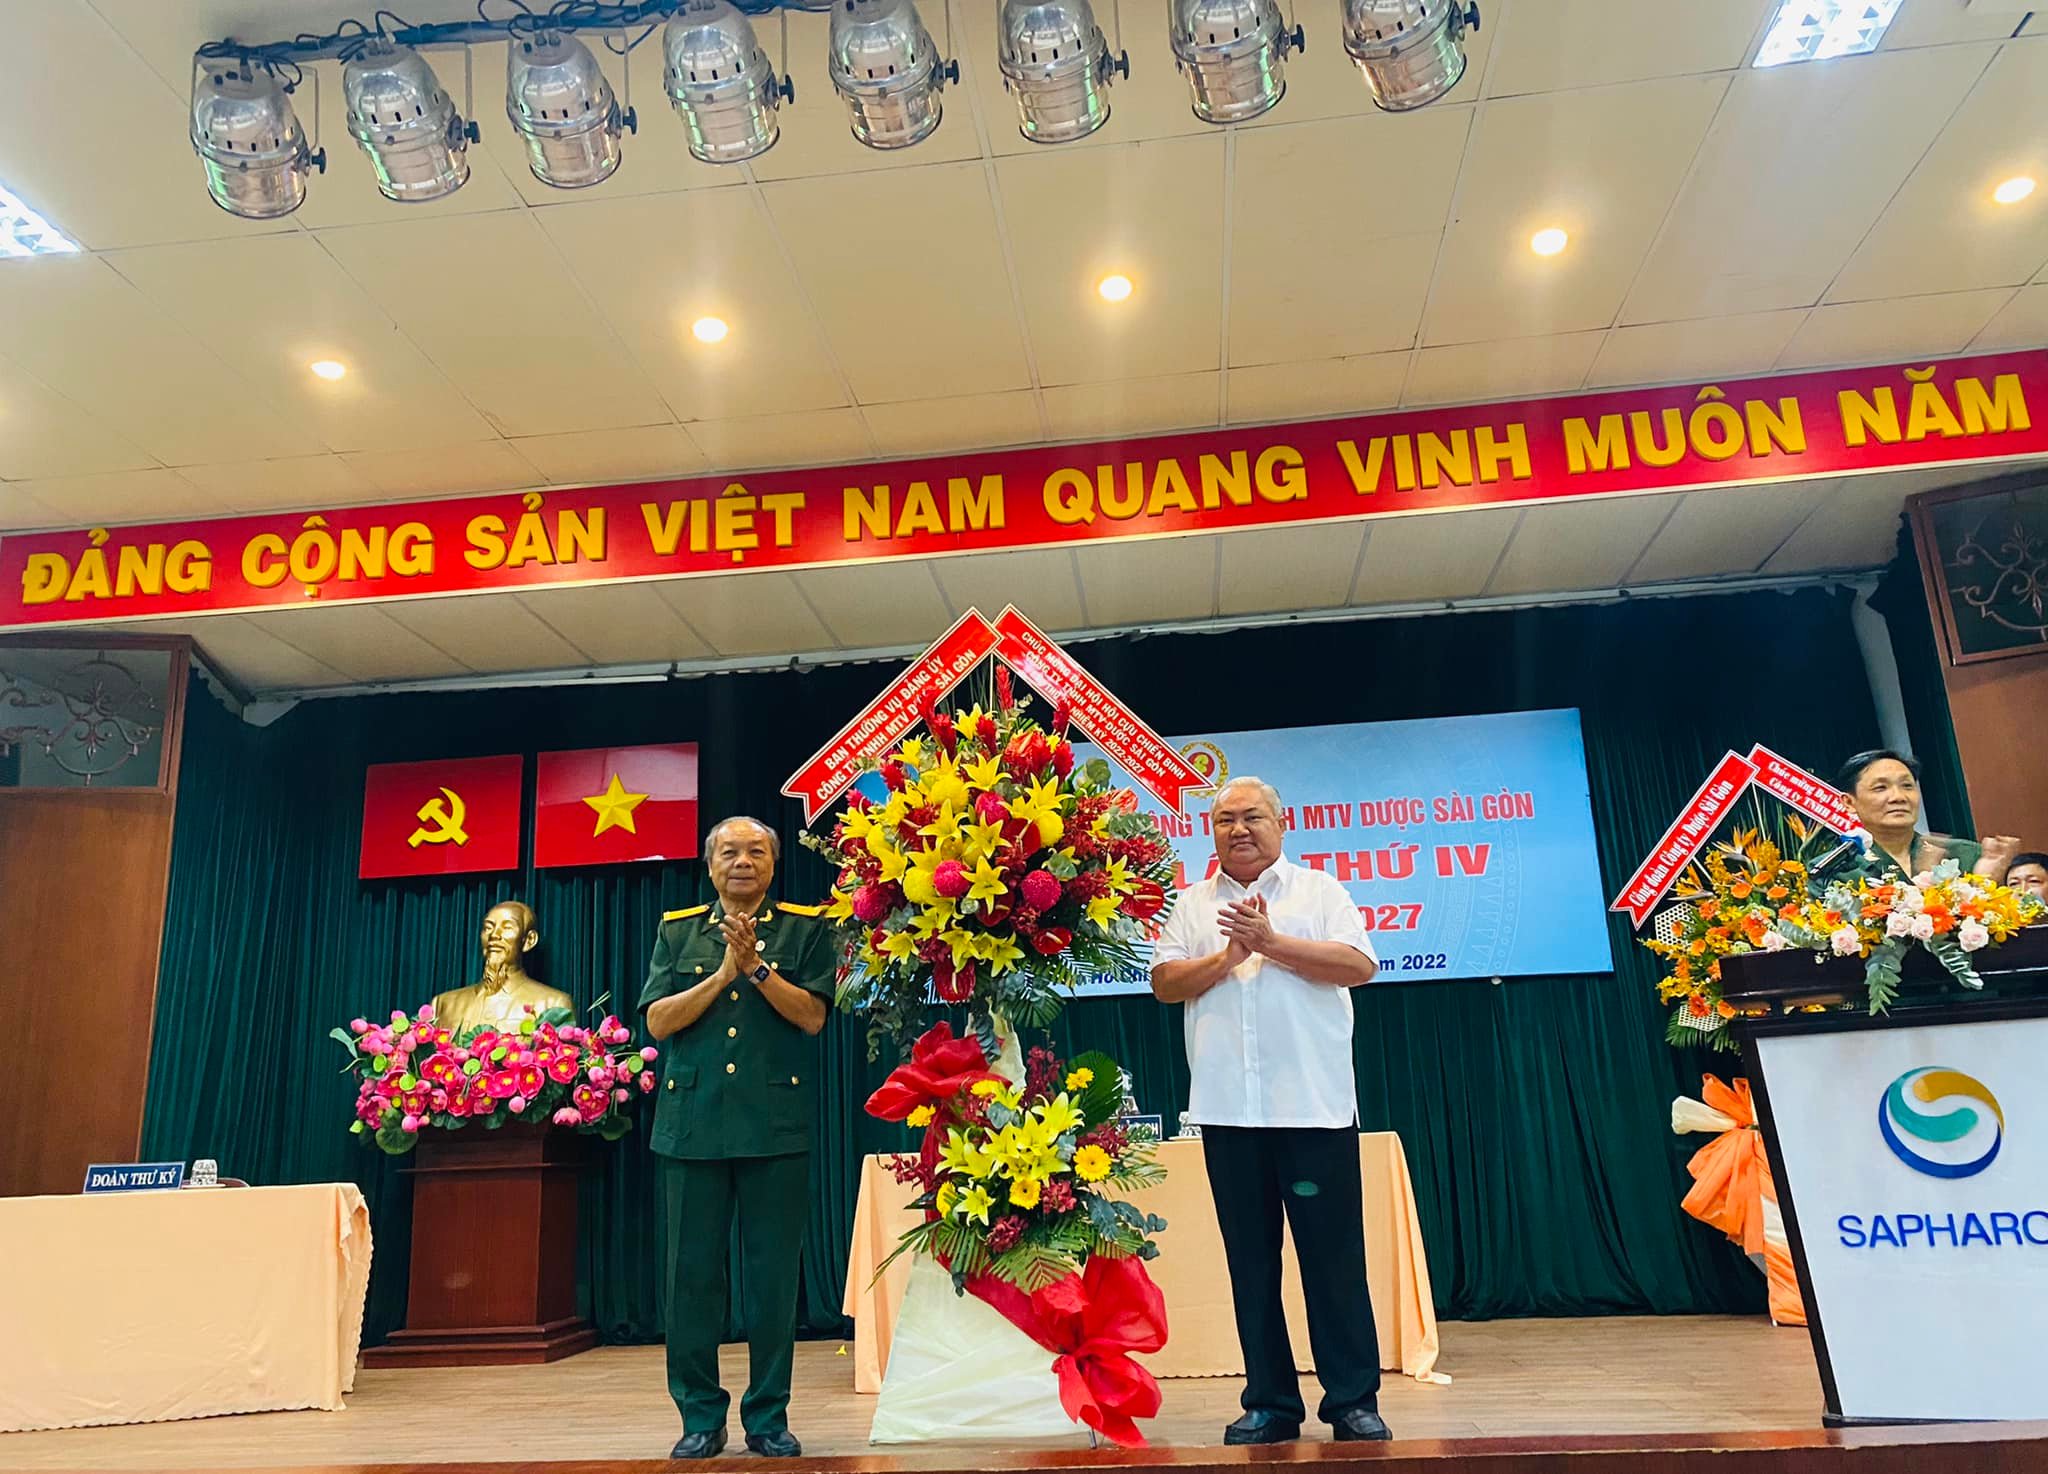 Đại hội Hội cựu chiến binh Công ty TNHH MTV Dược Sài Gòn - Sapharco lần thứ IV nhiệm kỳ 2022 - 2027